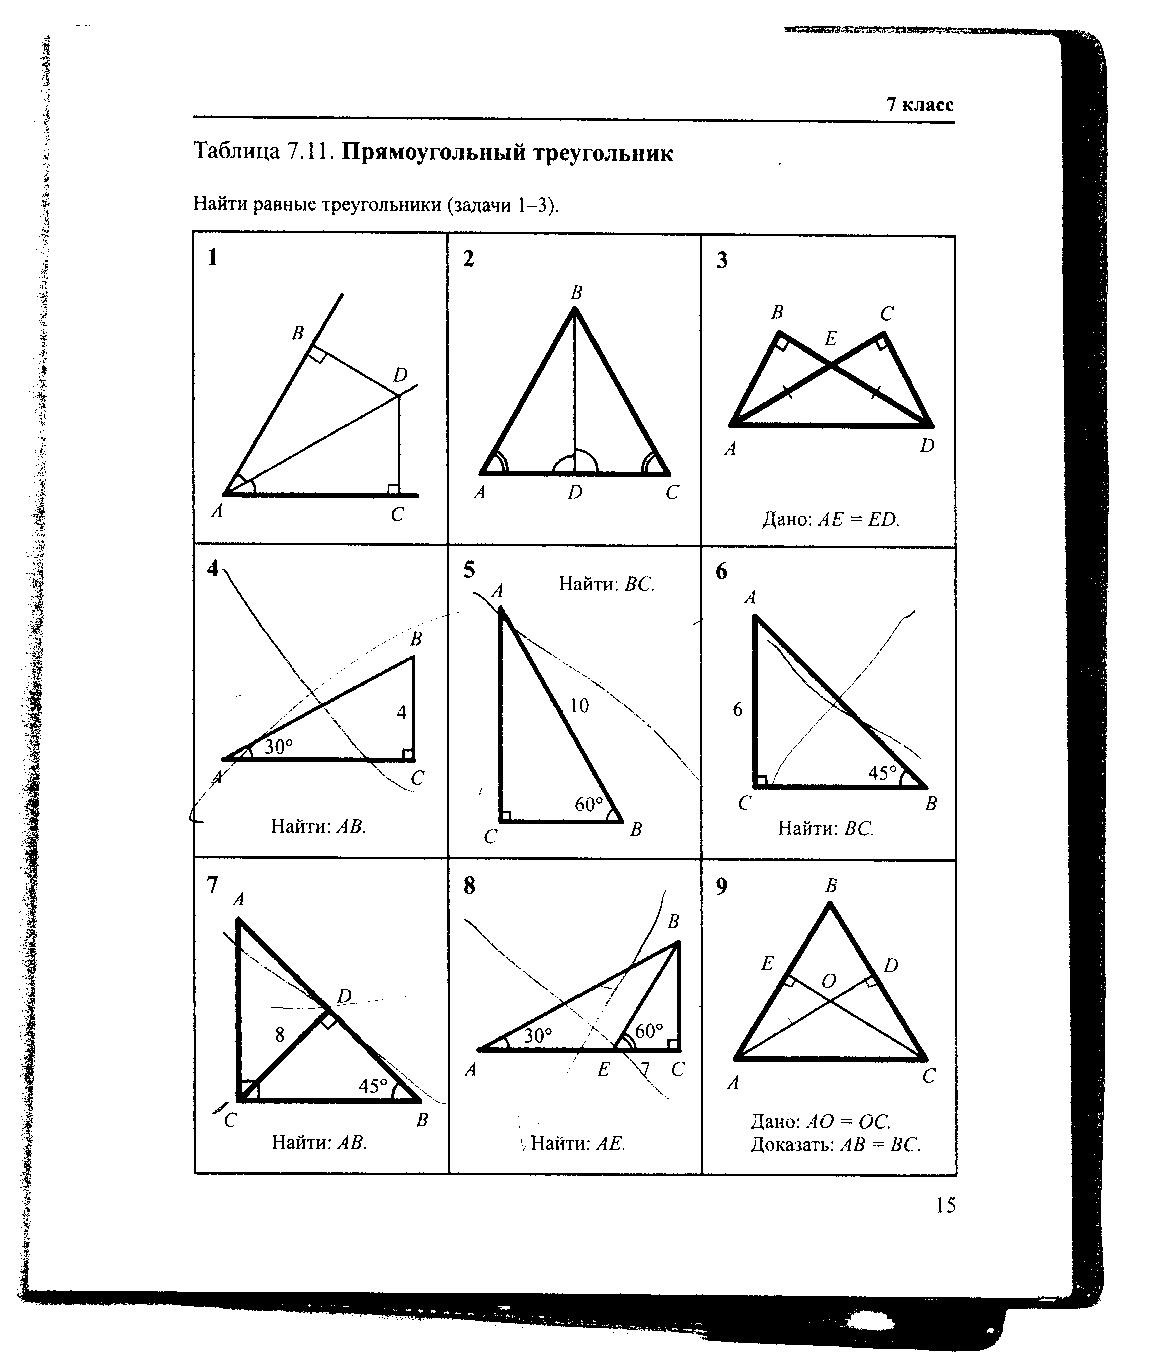 Геометрия на готовых чертежах 7 9. Геометрия Рабинович 7-9 класс задачи на готовых чертежах. Гдз по геометрии Рабинович 7-9 класс задачи на готовых чертежах. Гдз Рабинович 7-9 класс геометрия ответы. Таблица 7.11 прямоугольный треугольник 7 класс.